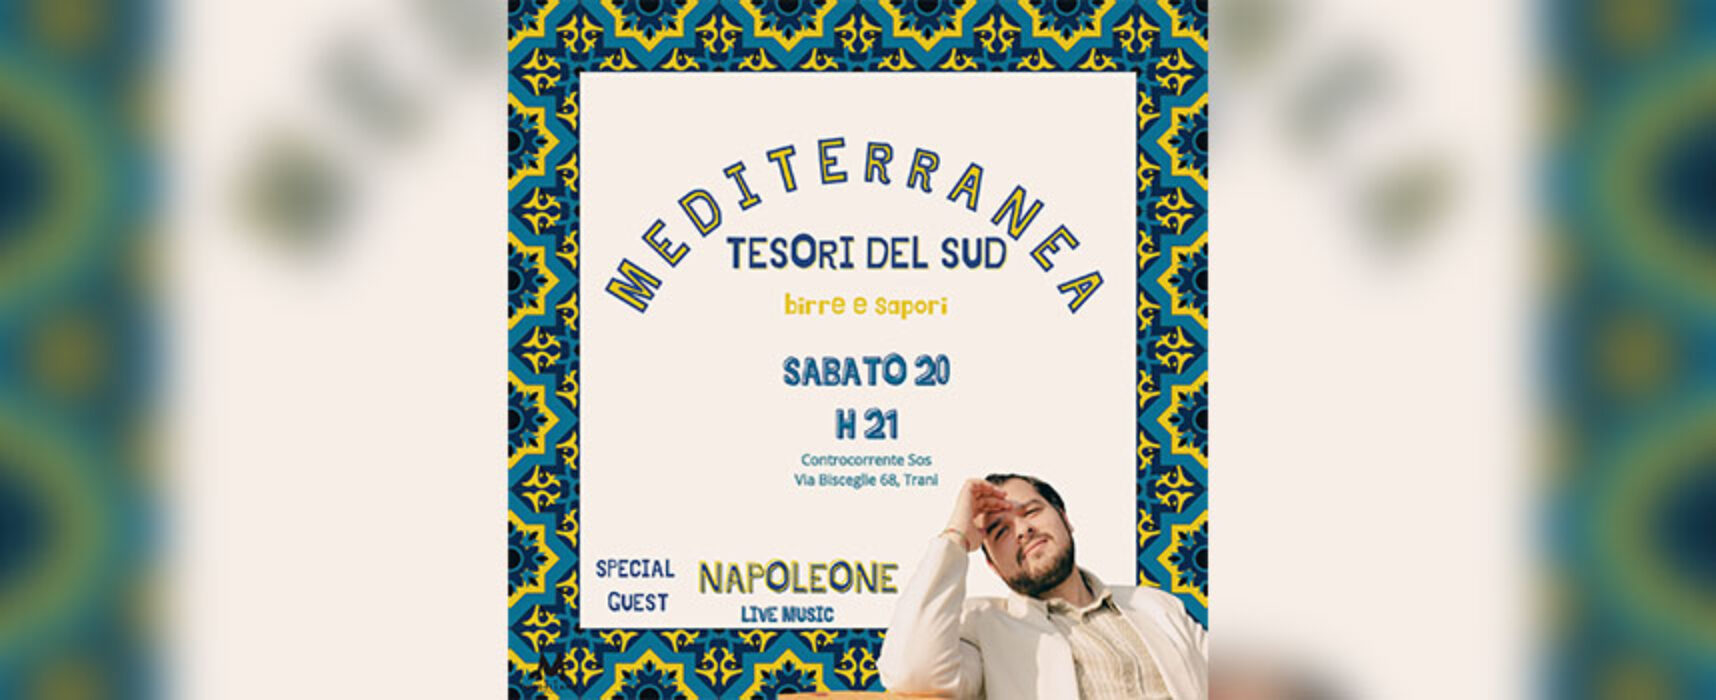 Napoleone in concerto a Controcorrente S.O.S. per il “Mediterranea – tesori del sud”